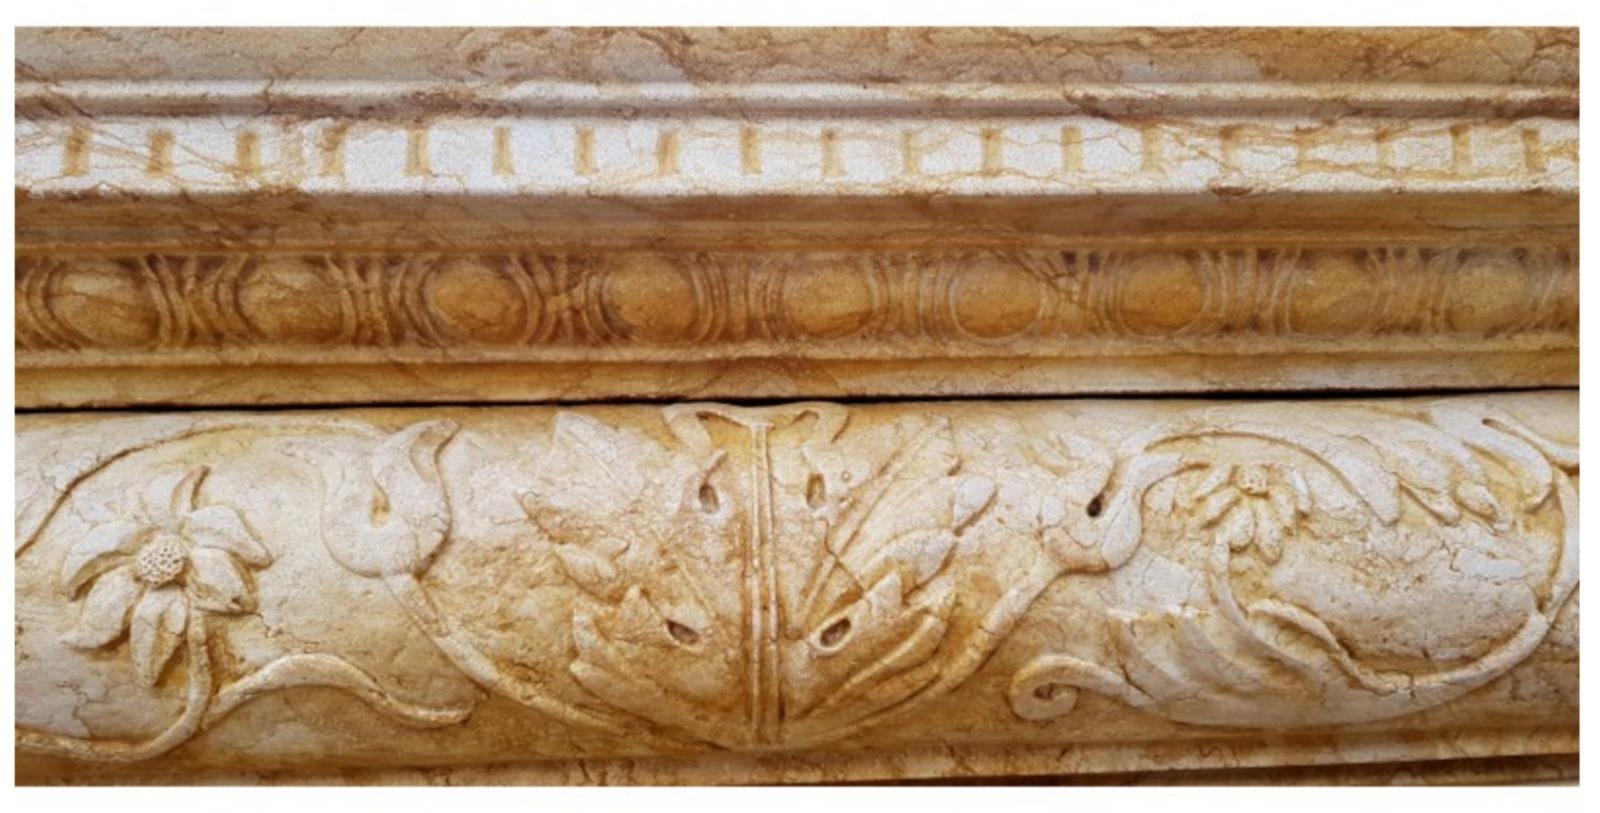 Toskanischer Kamin aus gelbem Marmor
Anfang des 20. Jahrhunderts

Charakteristisch ist die hochreliefartige Ornamentik mit Masken, Putten, geflügelten Putten, Rosetten und floralen Achantus-Blatt-Motiven.
Hergestellt in 